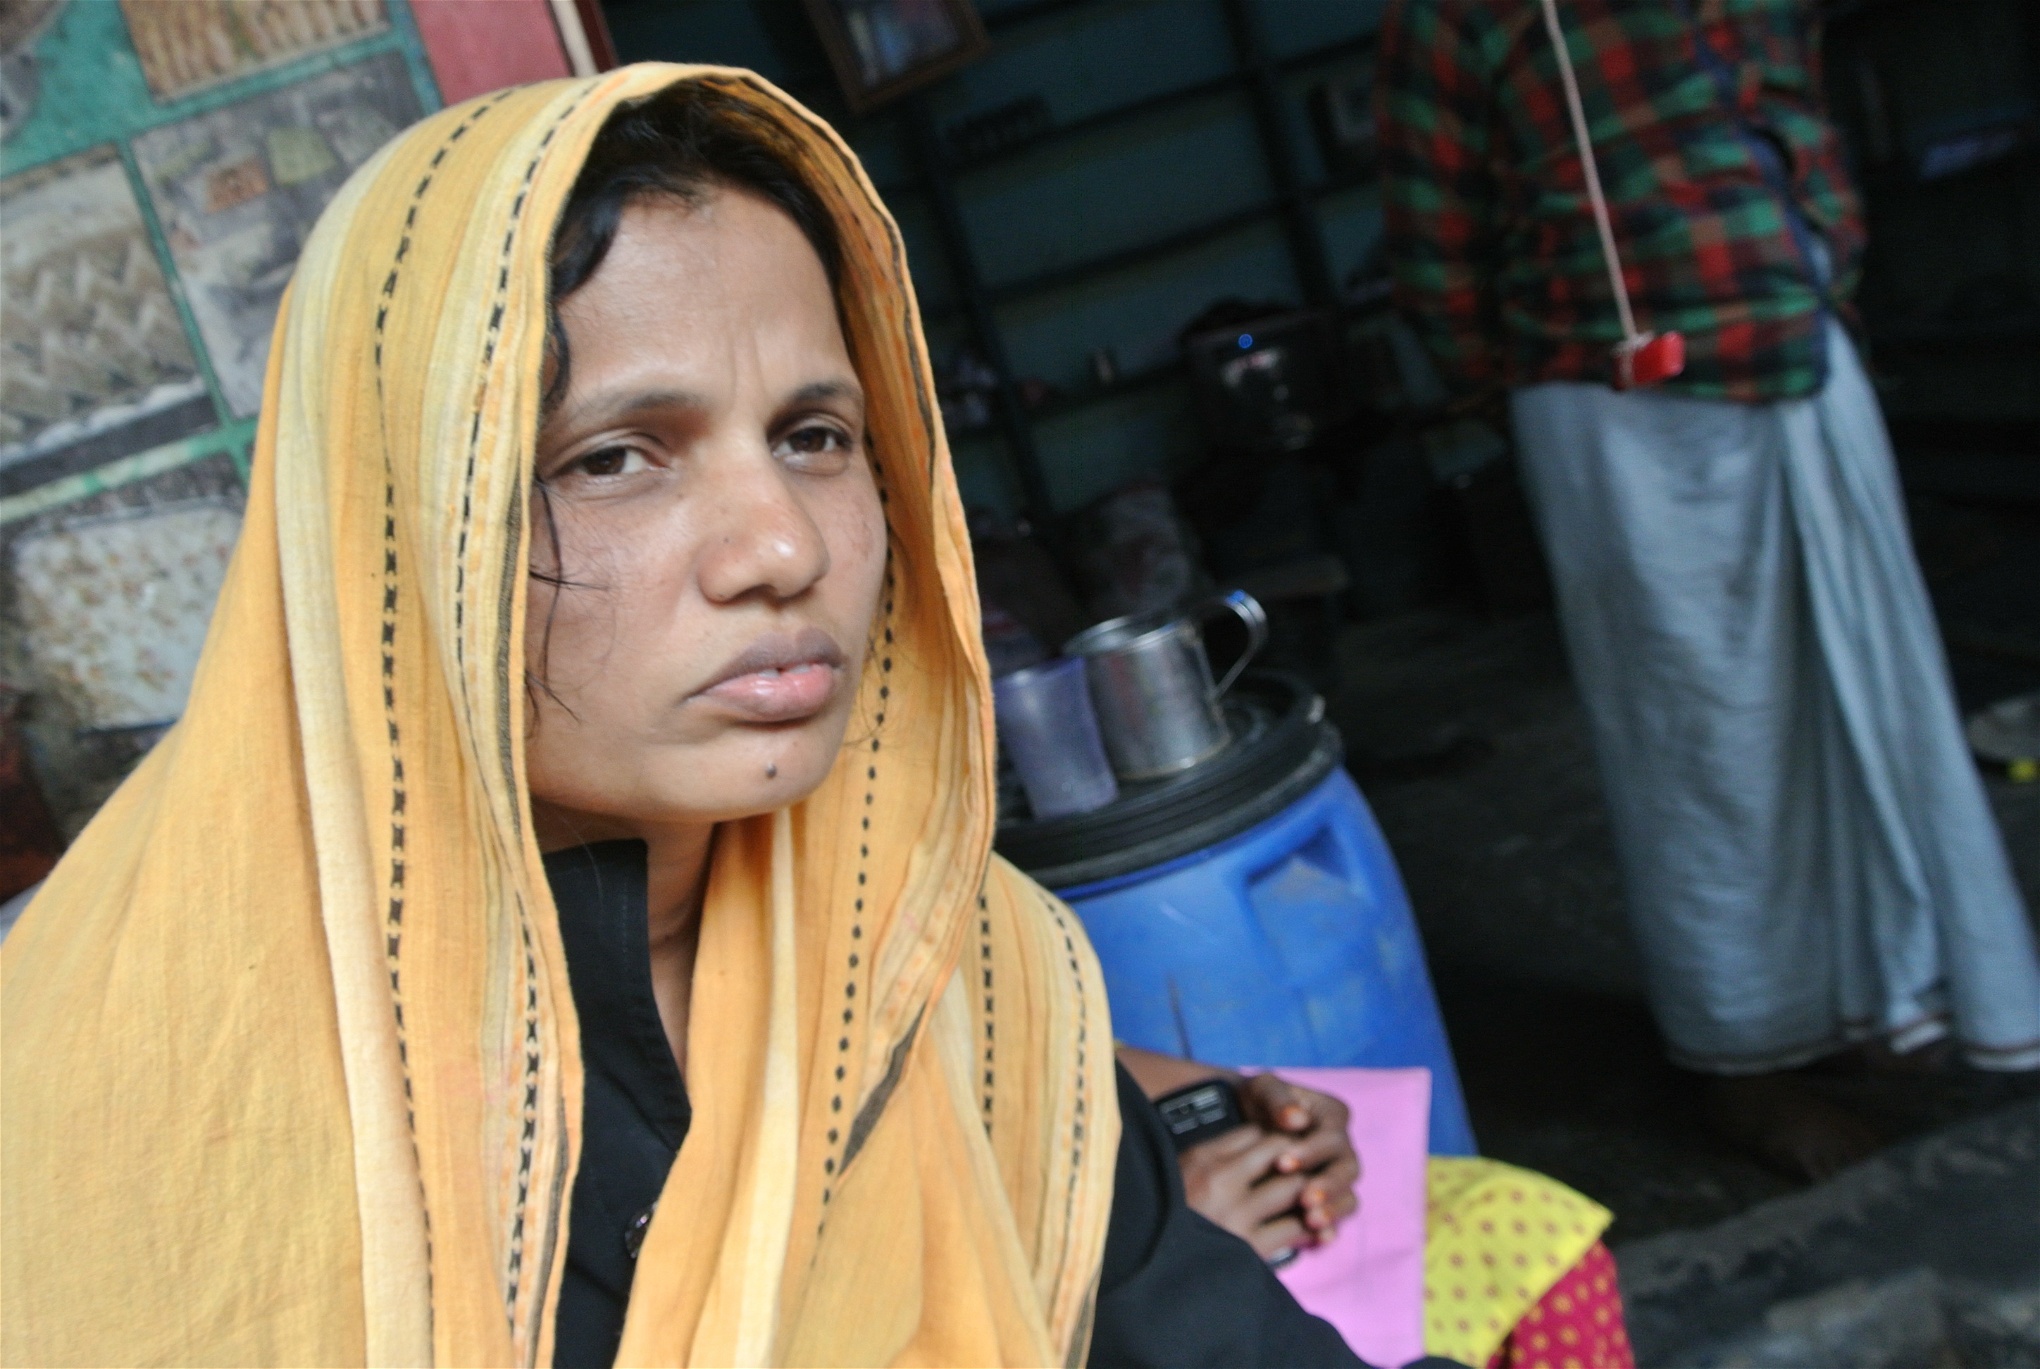 Aklima Akter Pakhi. Sömmerska med kortnummer 1145 på en av fabrikerna i Rana Plazakomplexet. Aklima skadade både huvudet och armen vid fabriksraset och måste fortfarande besöka sjukhuset varannan månad. Aklima överlevde under de två dagar hon satt fast i rasmassorna genom att dricka sin egen urin.